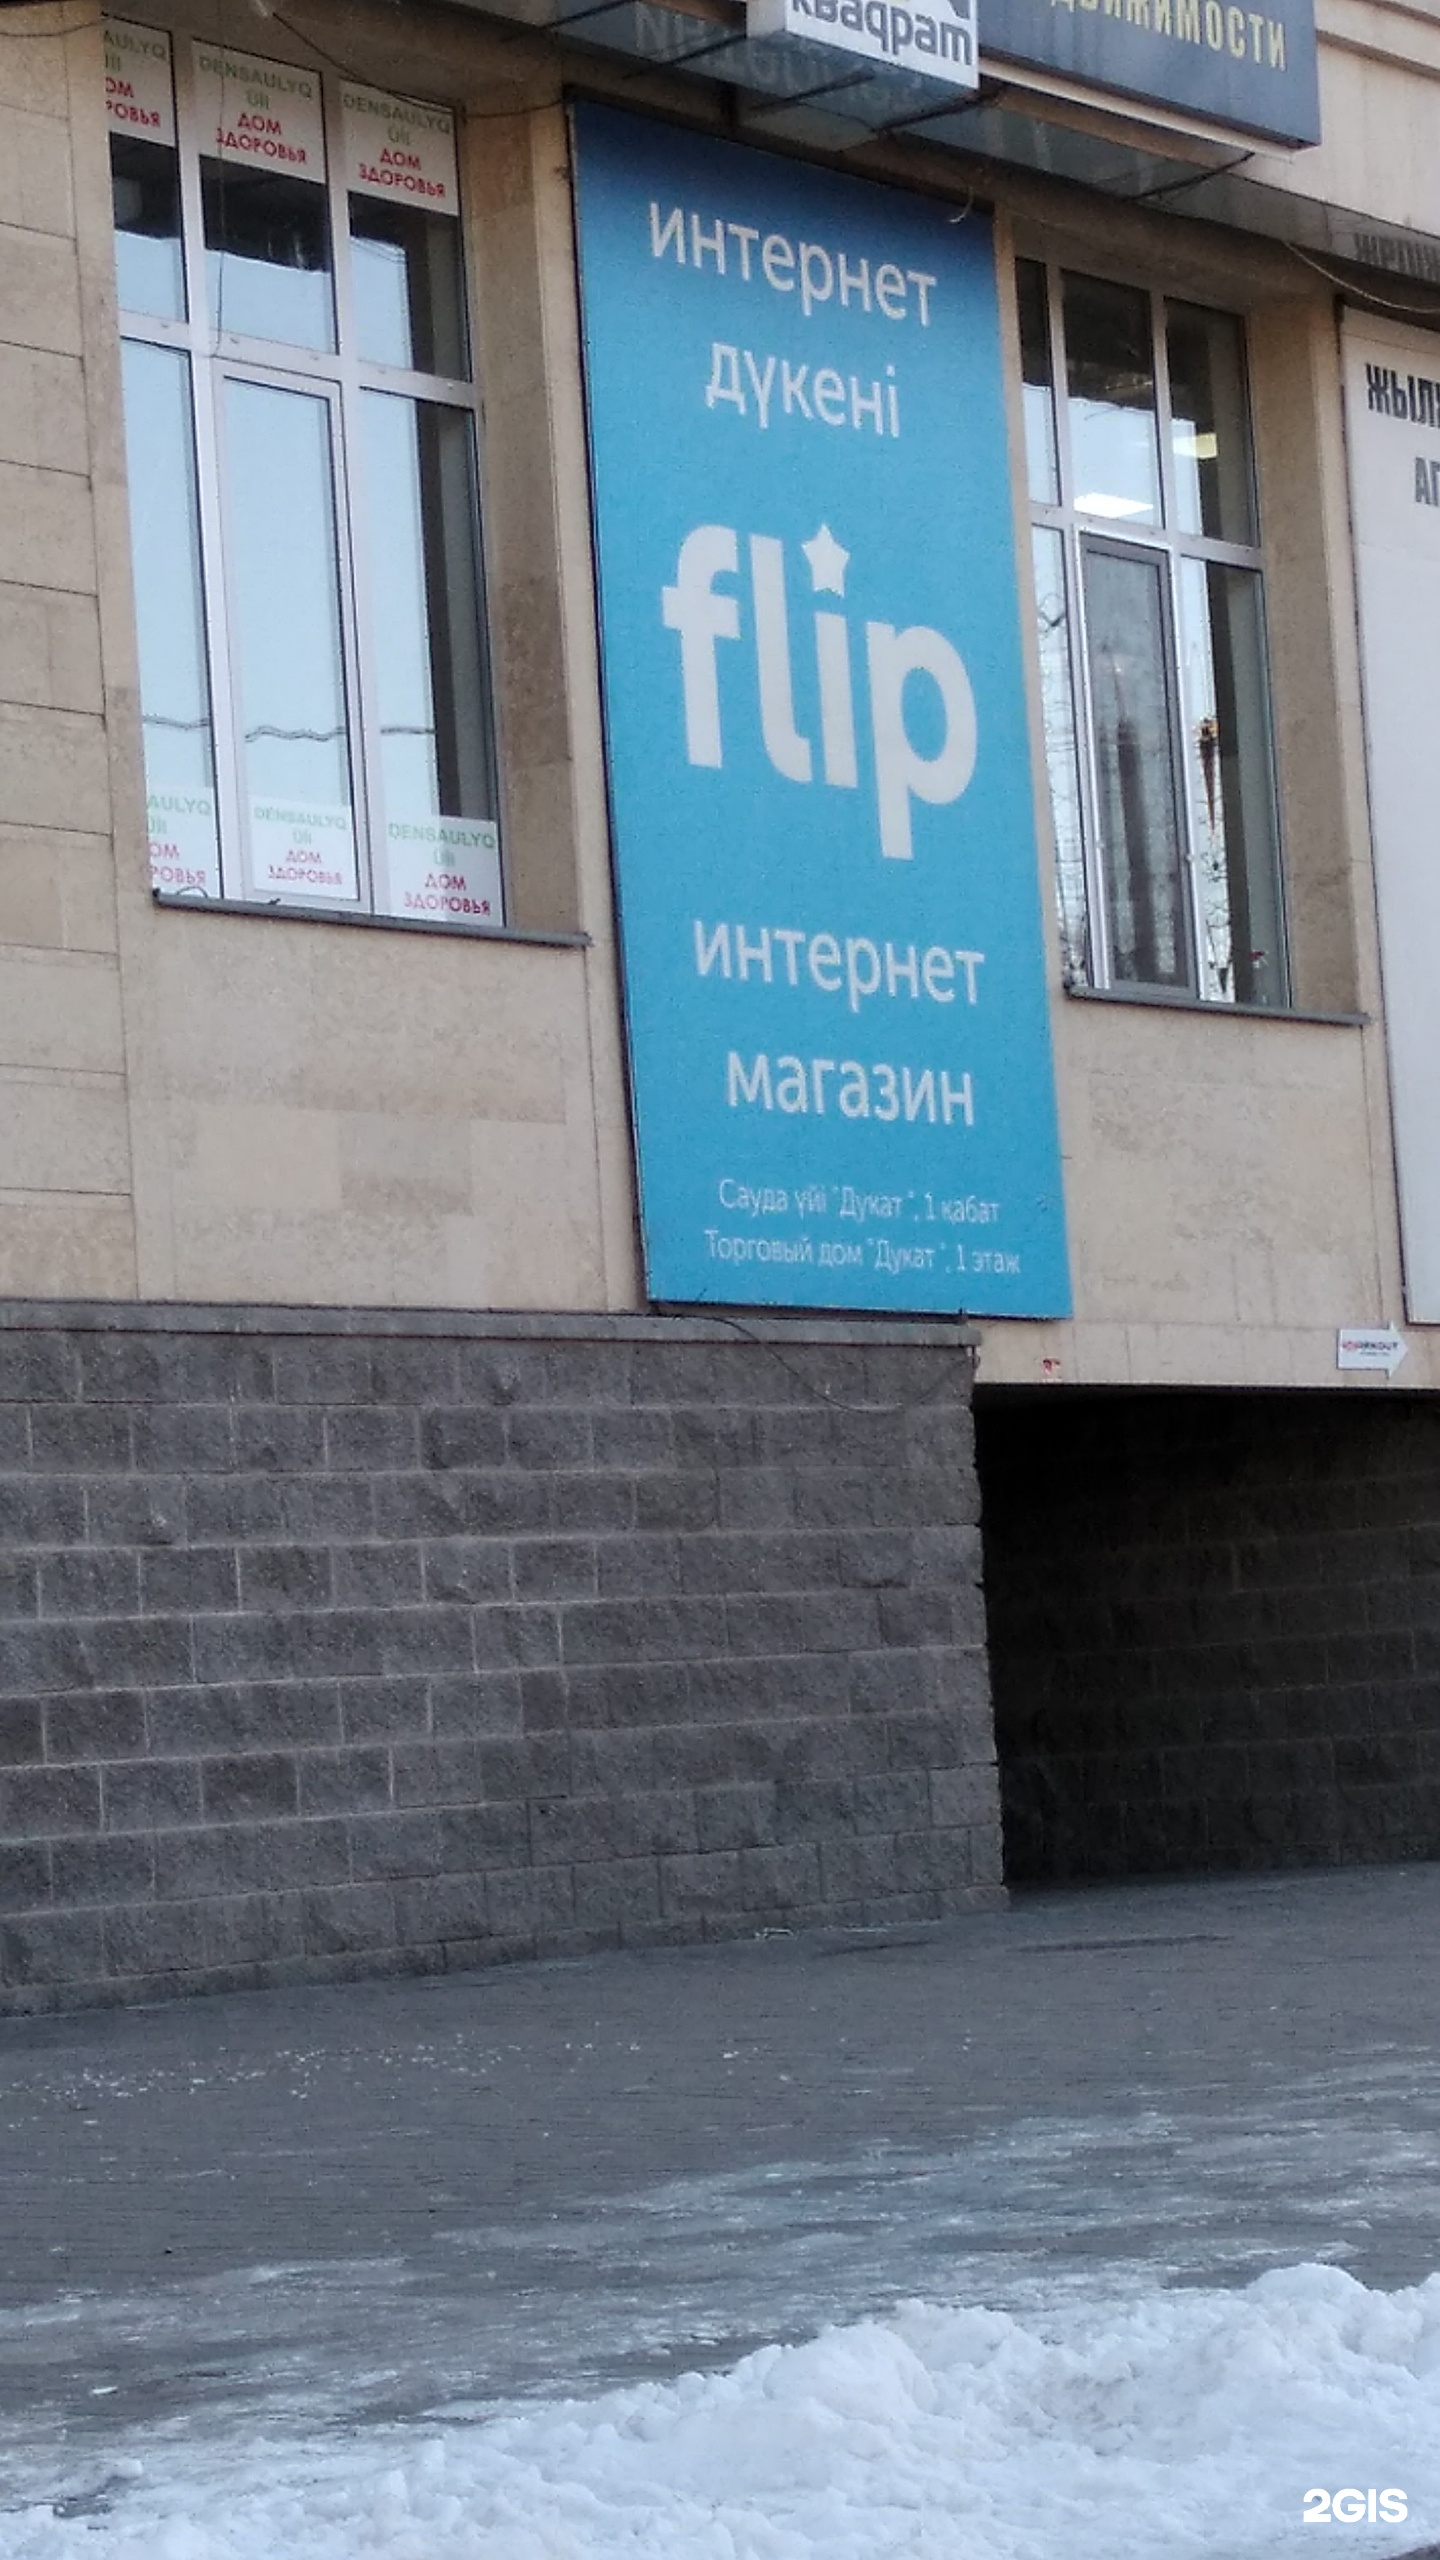 Flip магазин